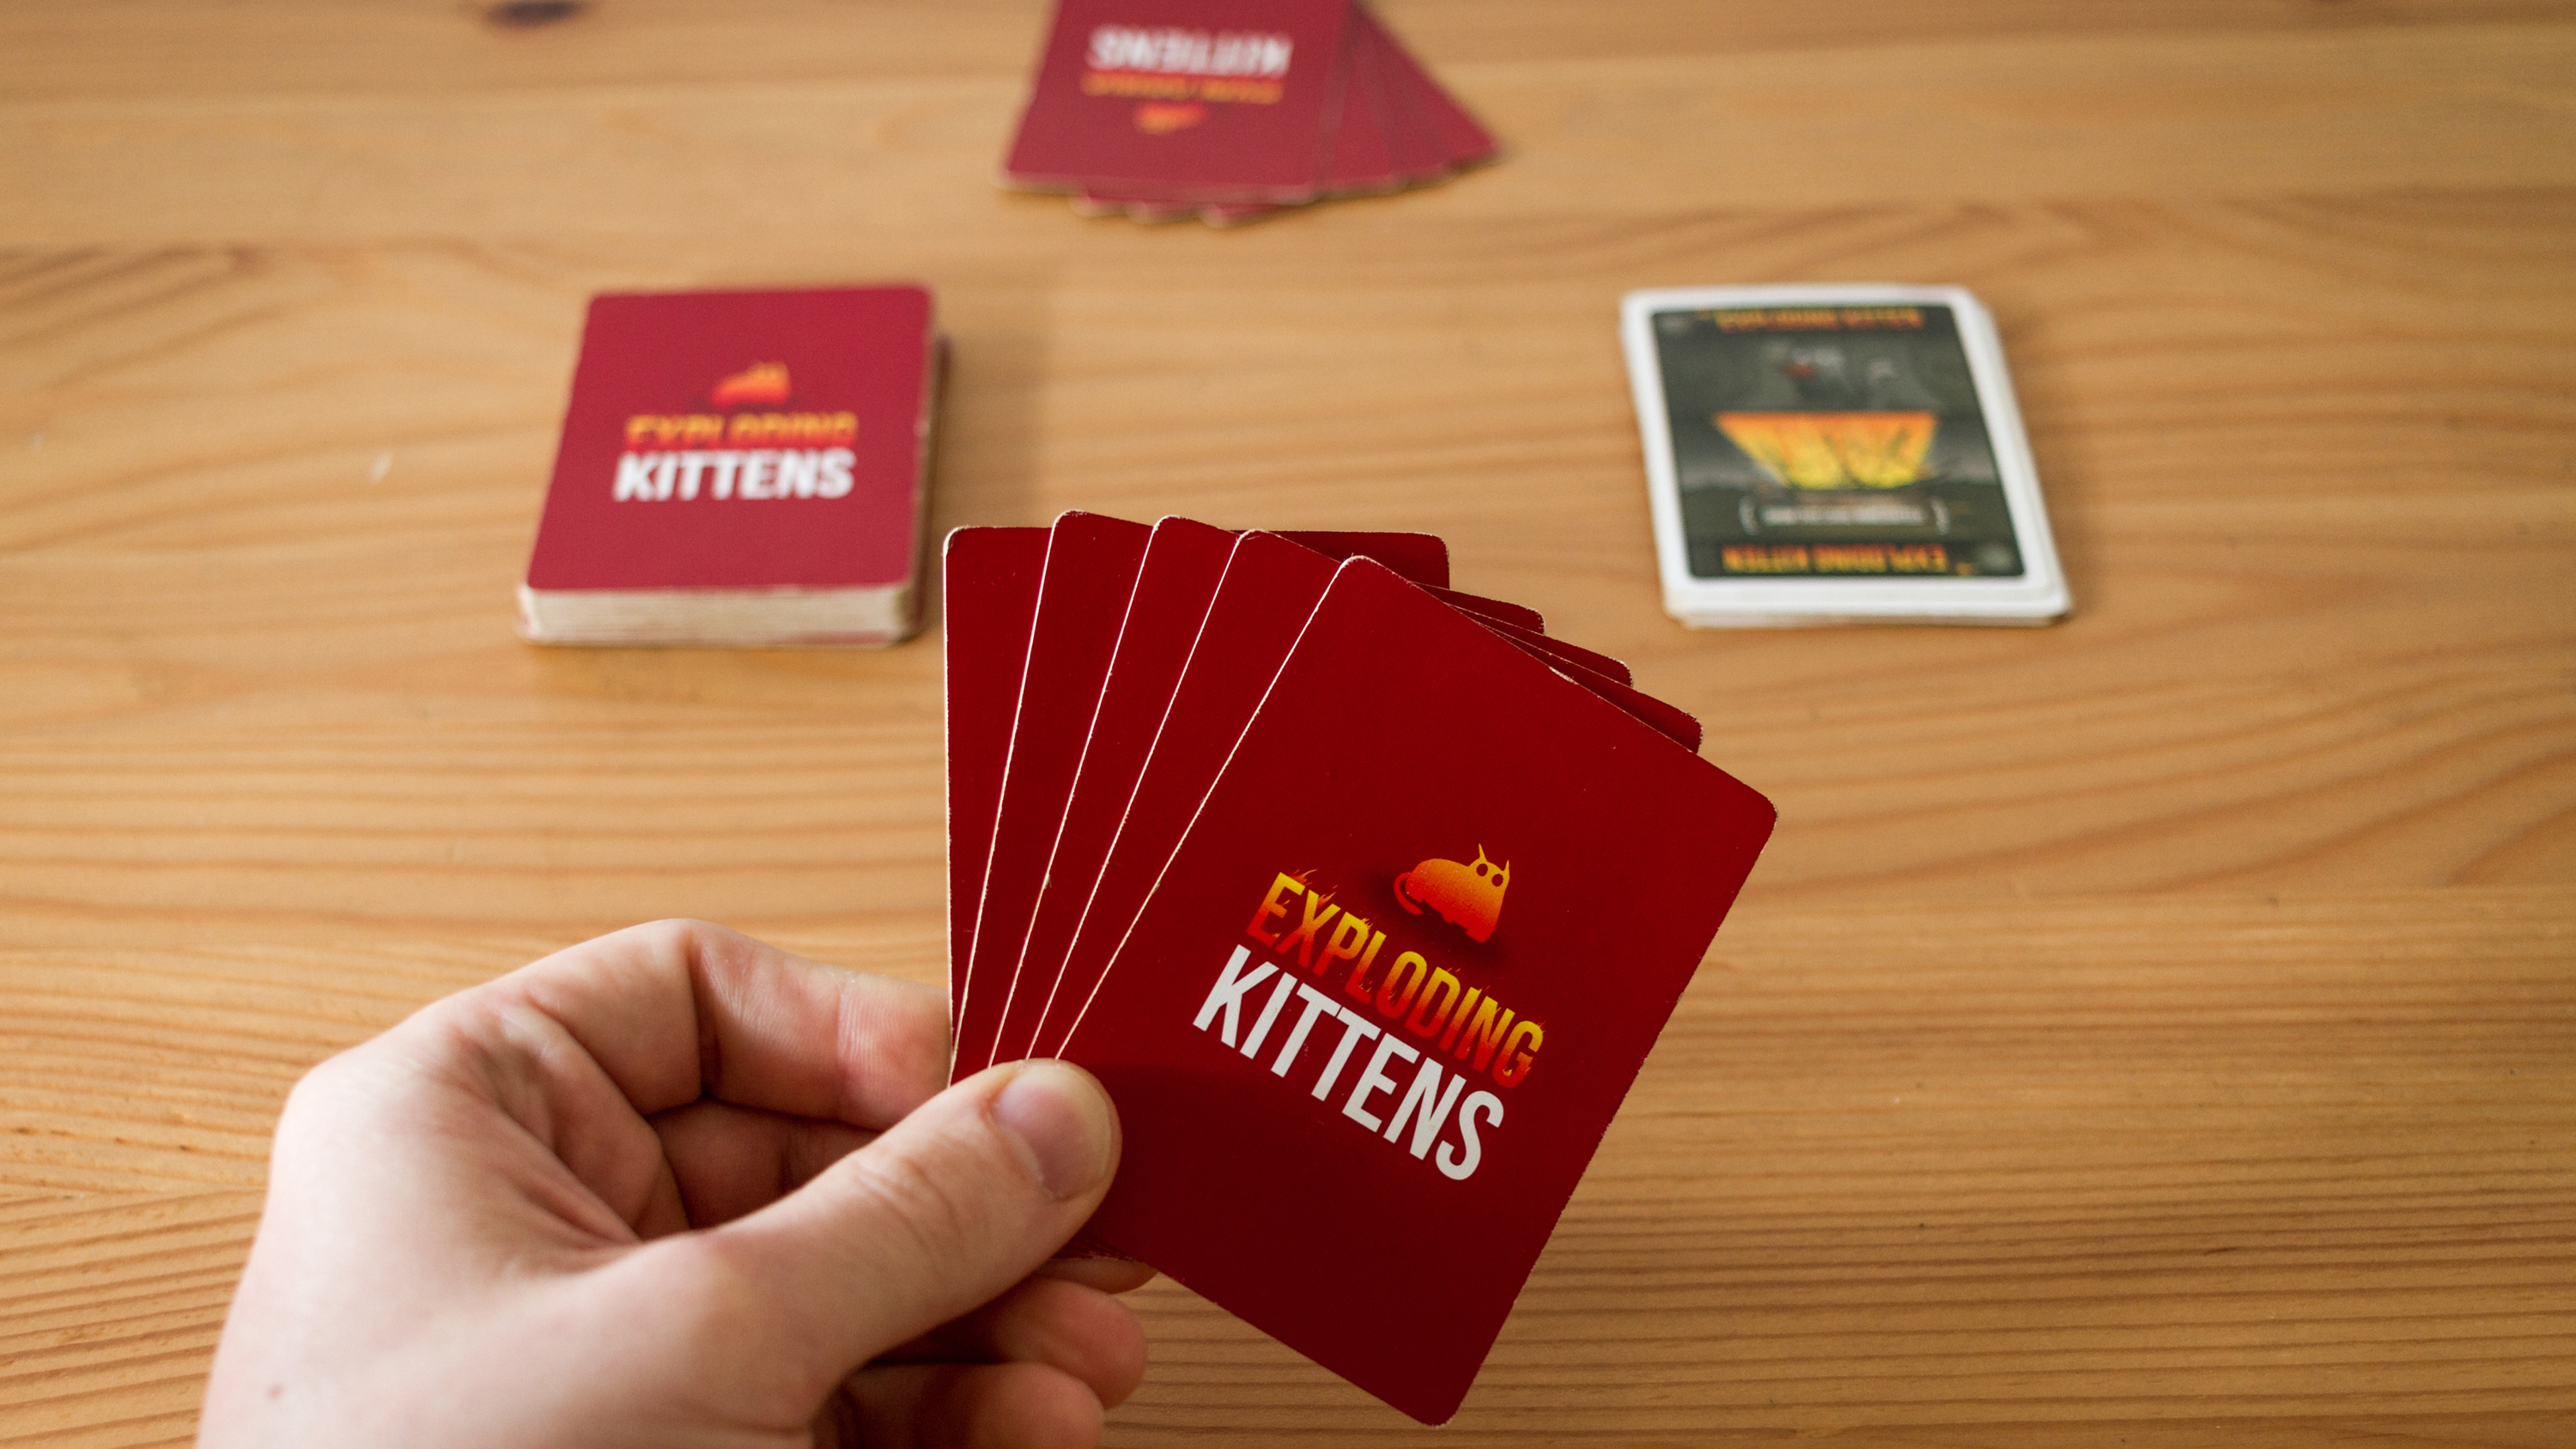 Exploding one-handed kitten cards